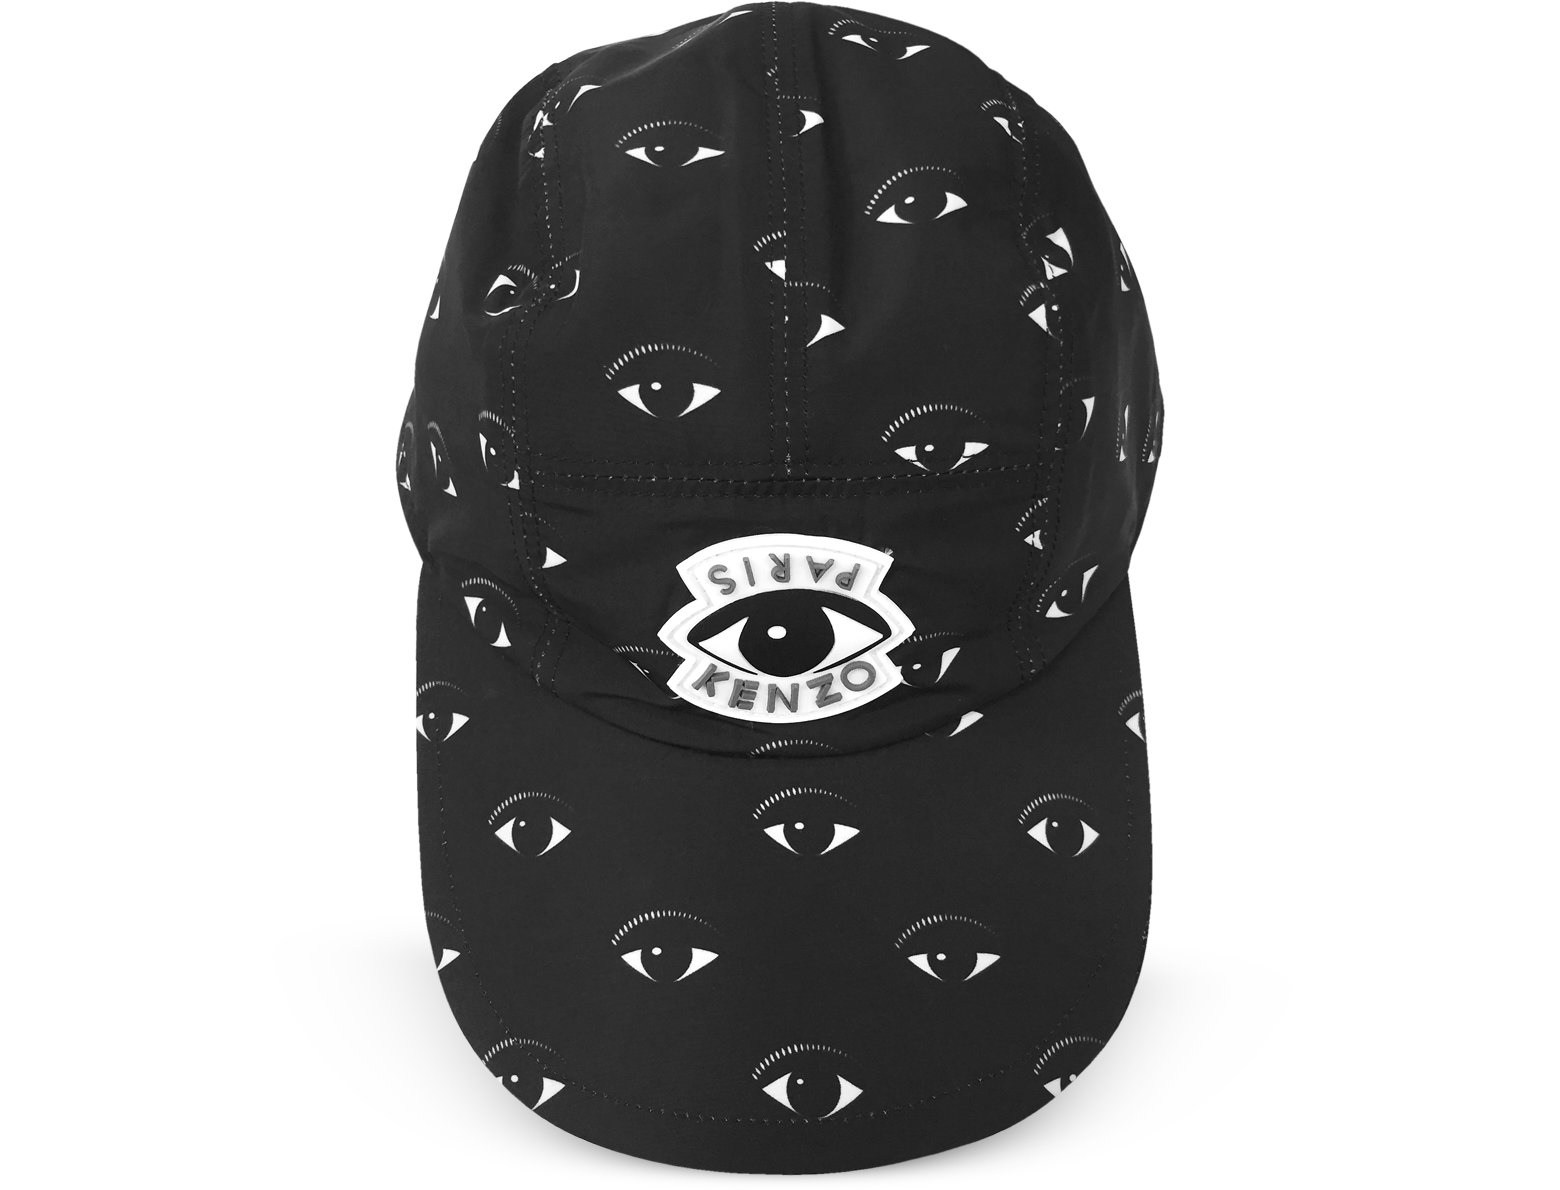 kenzo eye cap